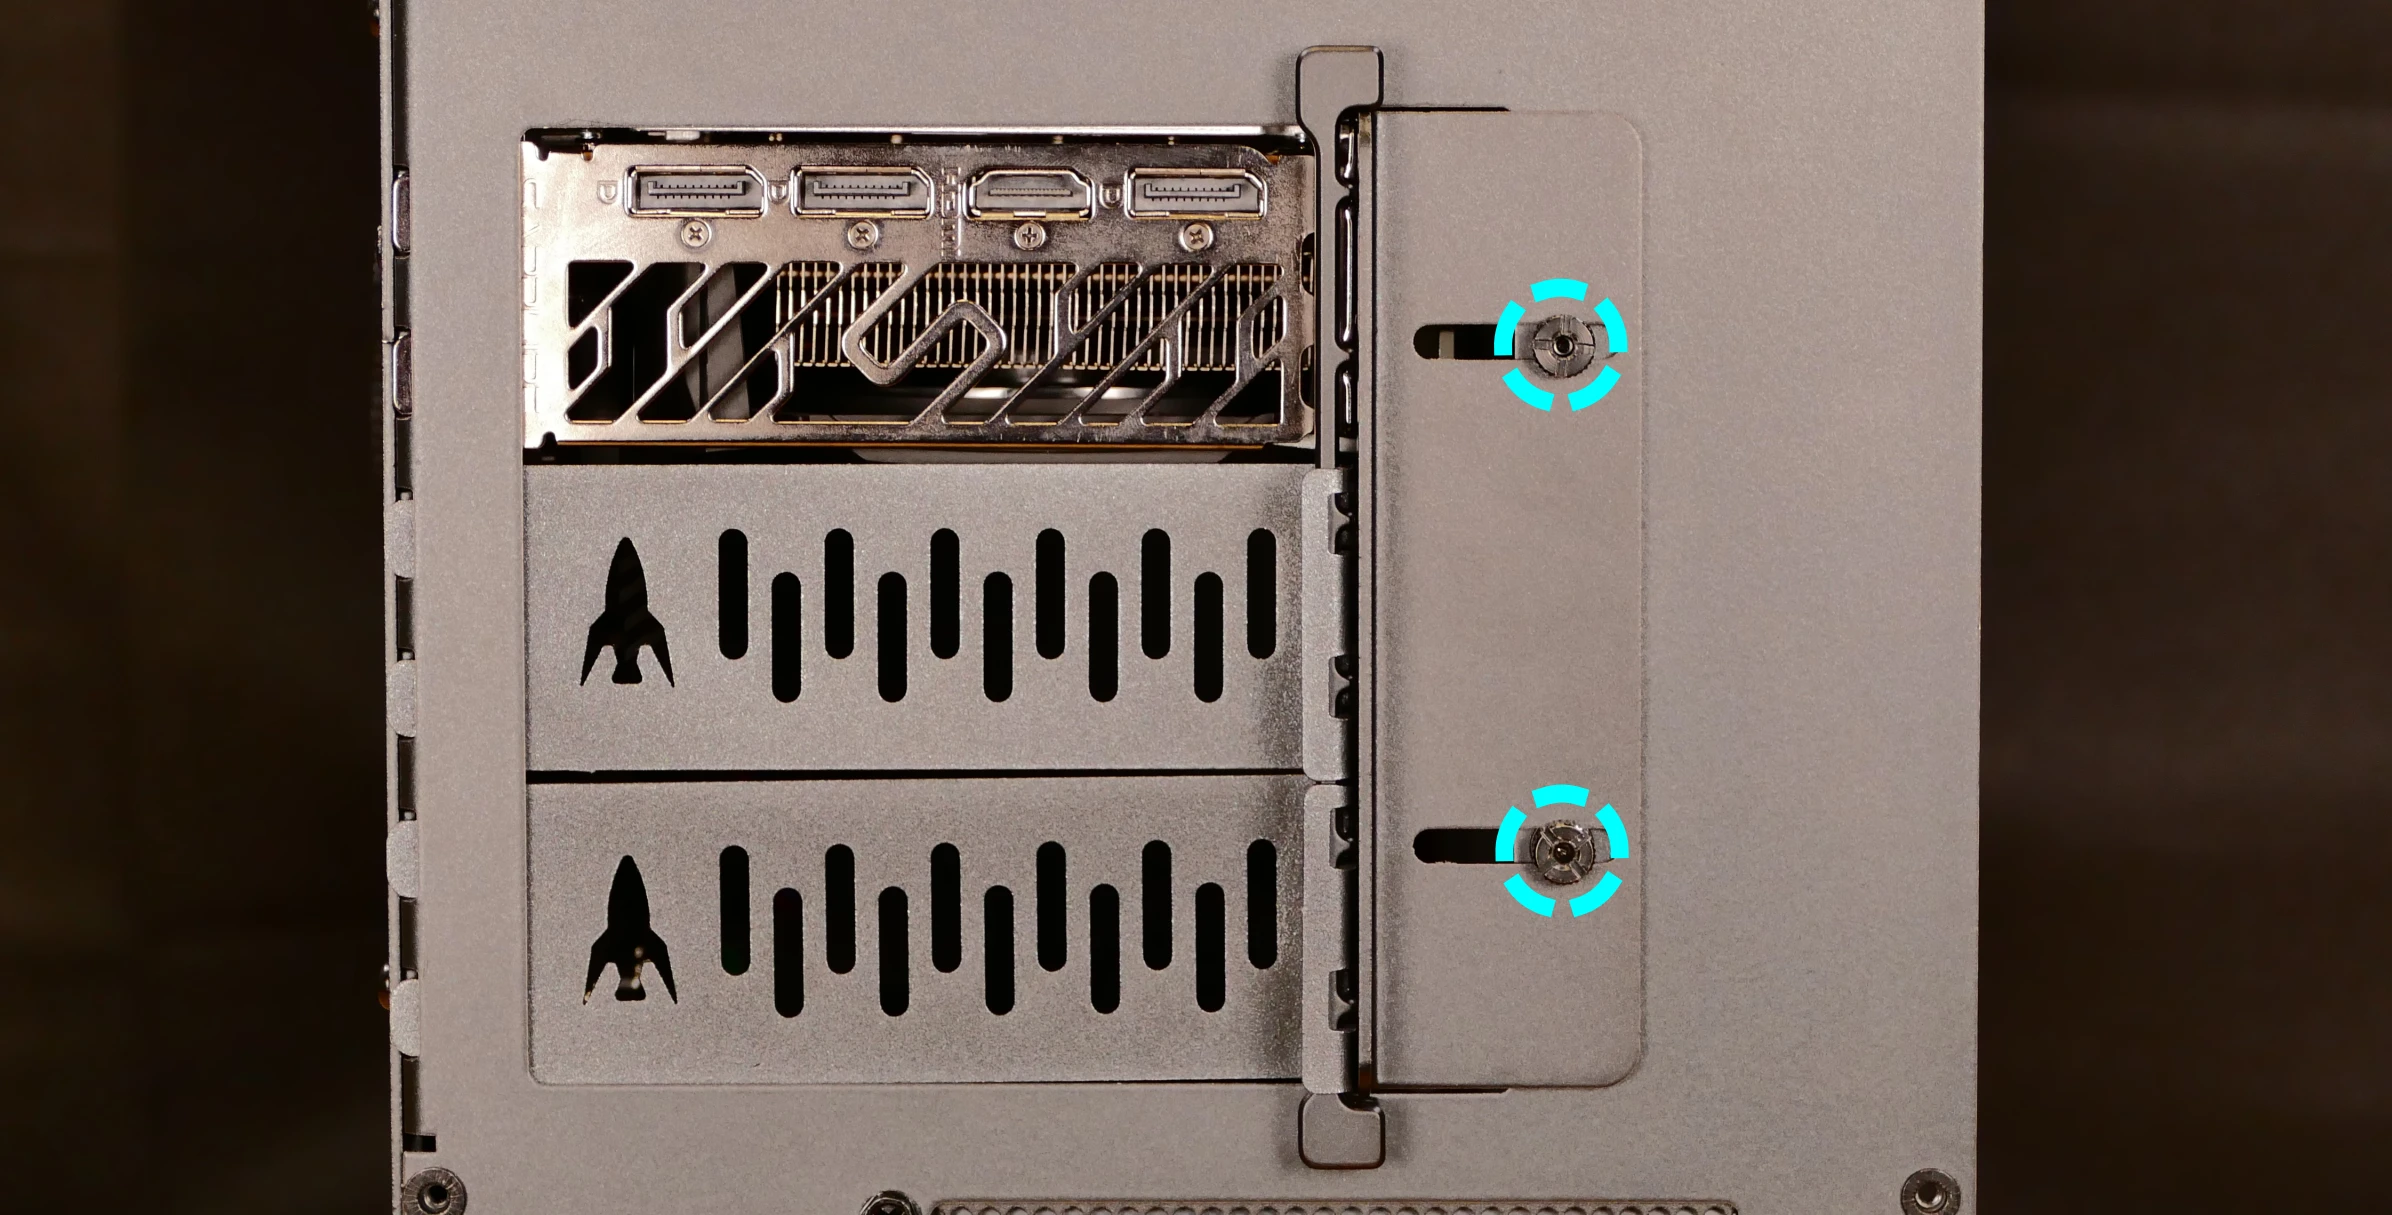 PCIe bracket screws